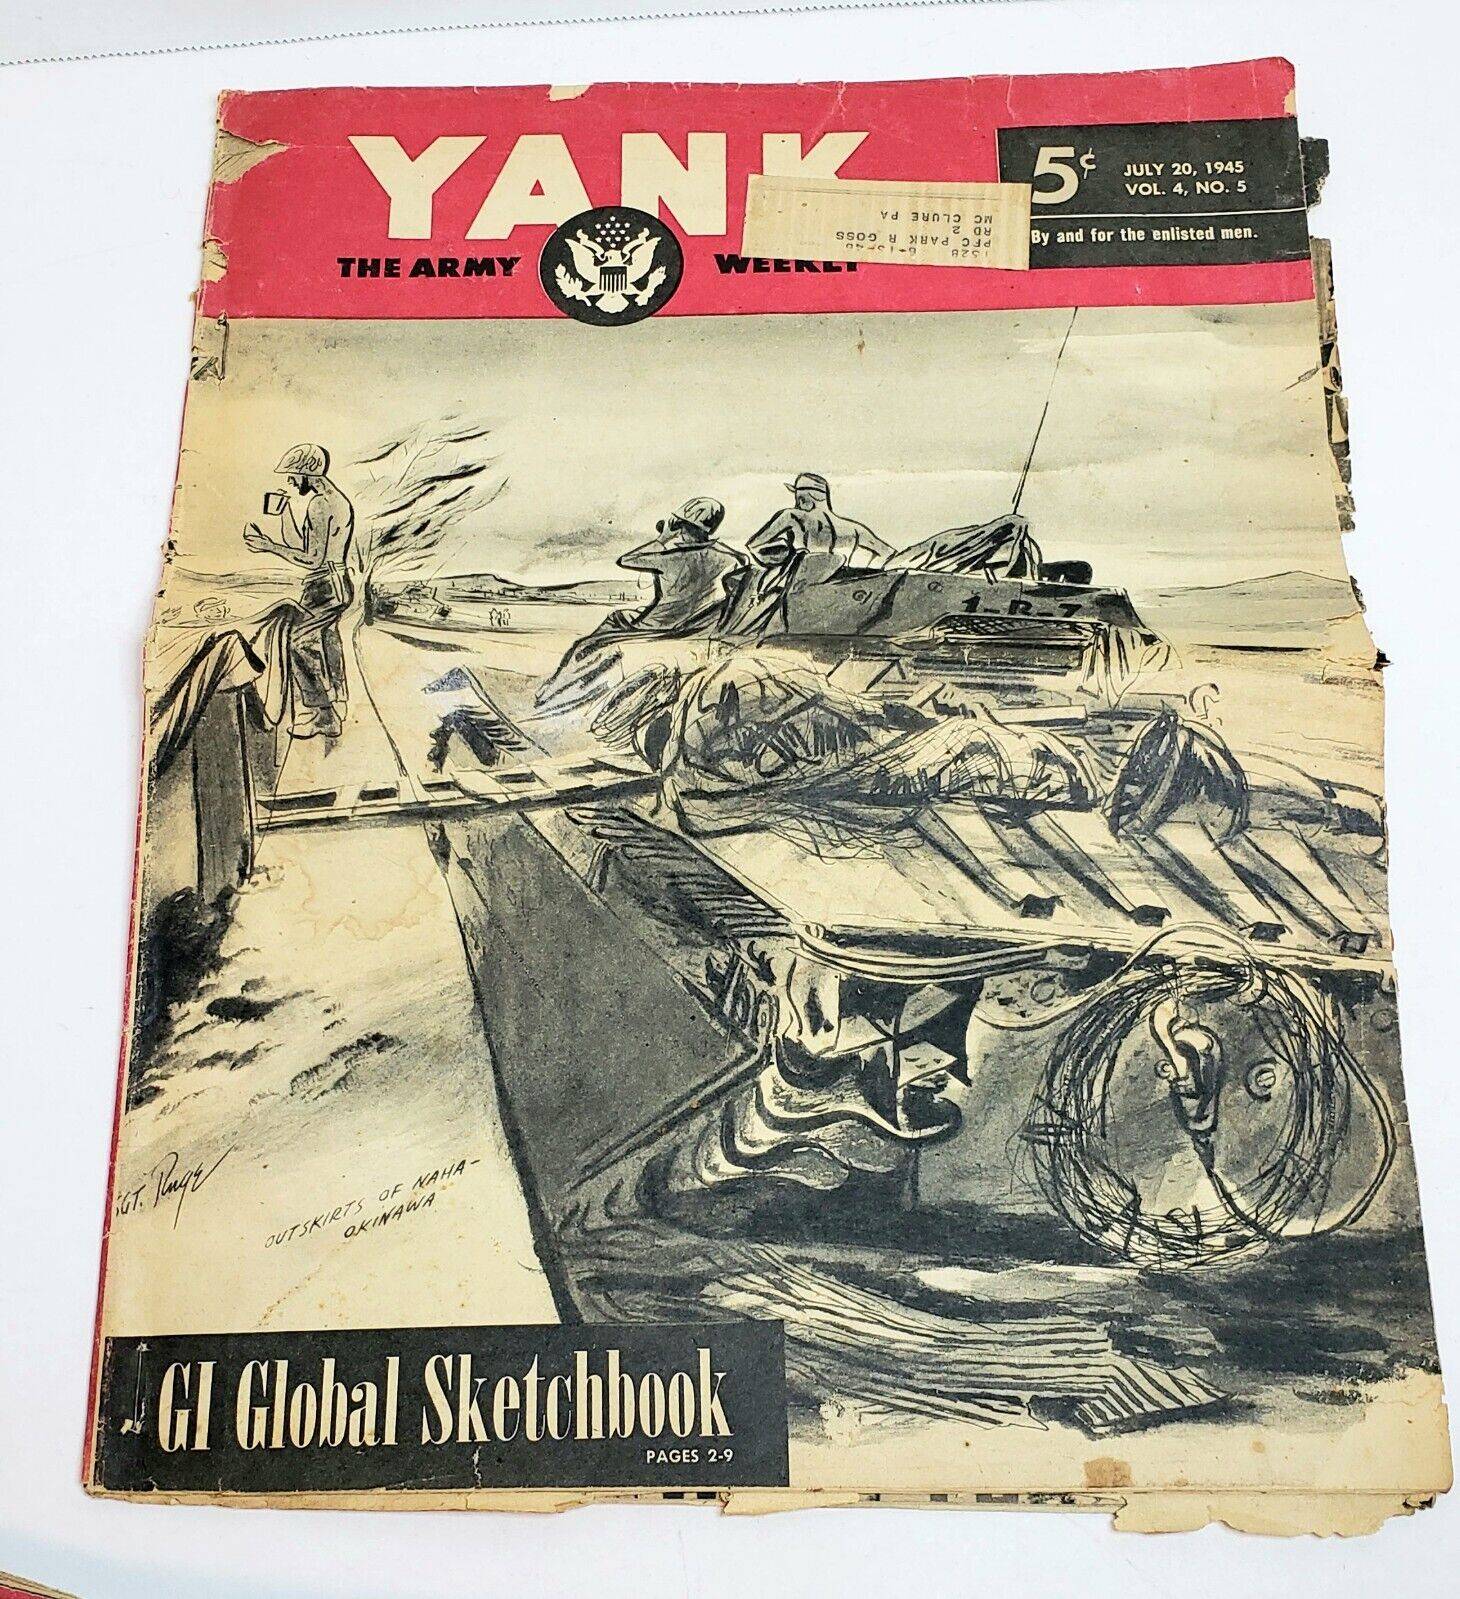 YANK The Army Weekly July 20, 1945 GI Global Sketchbook